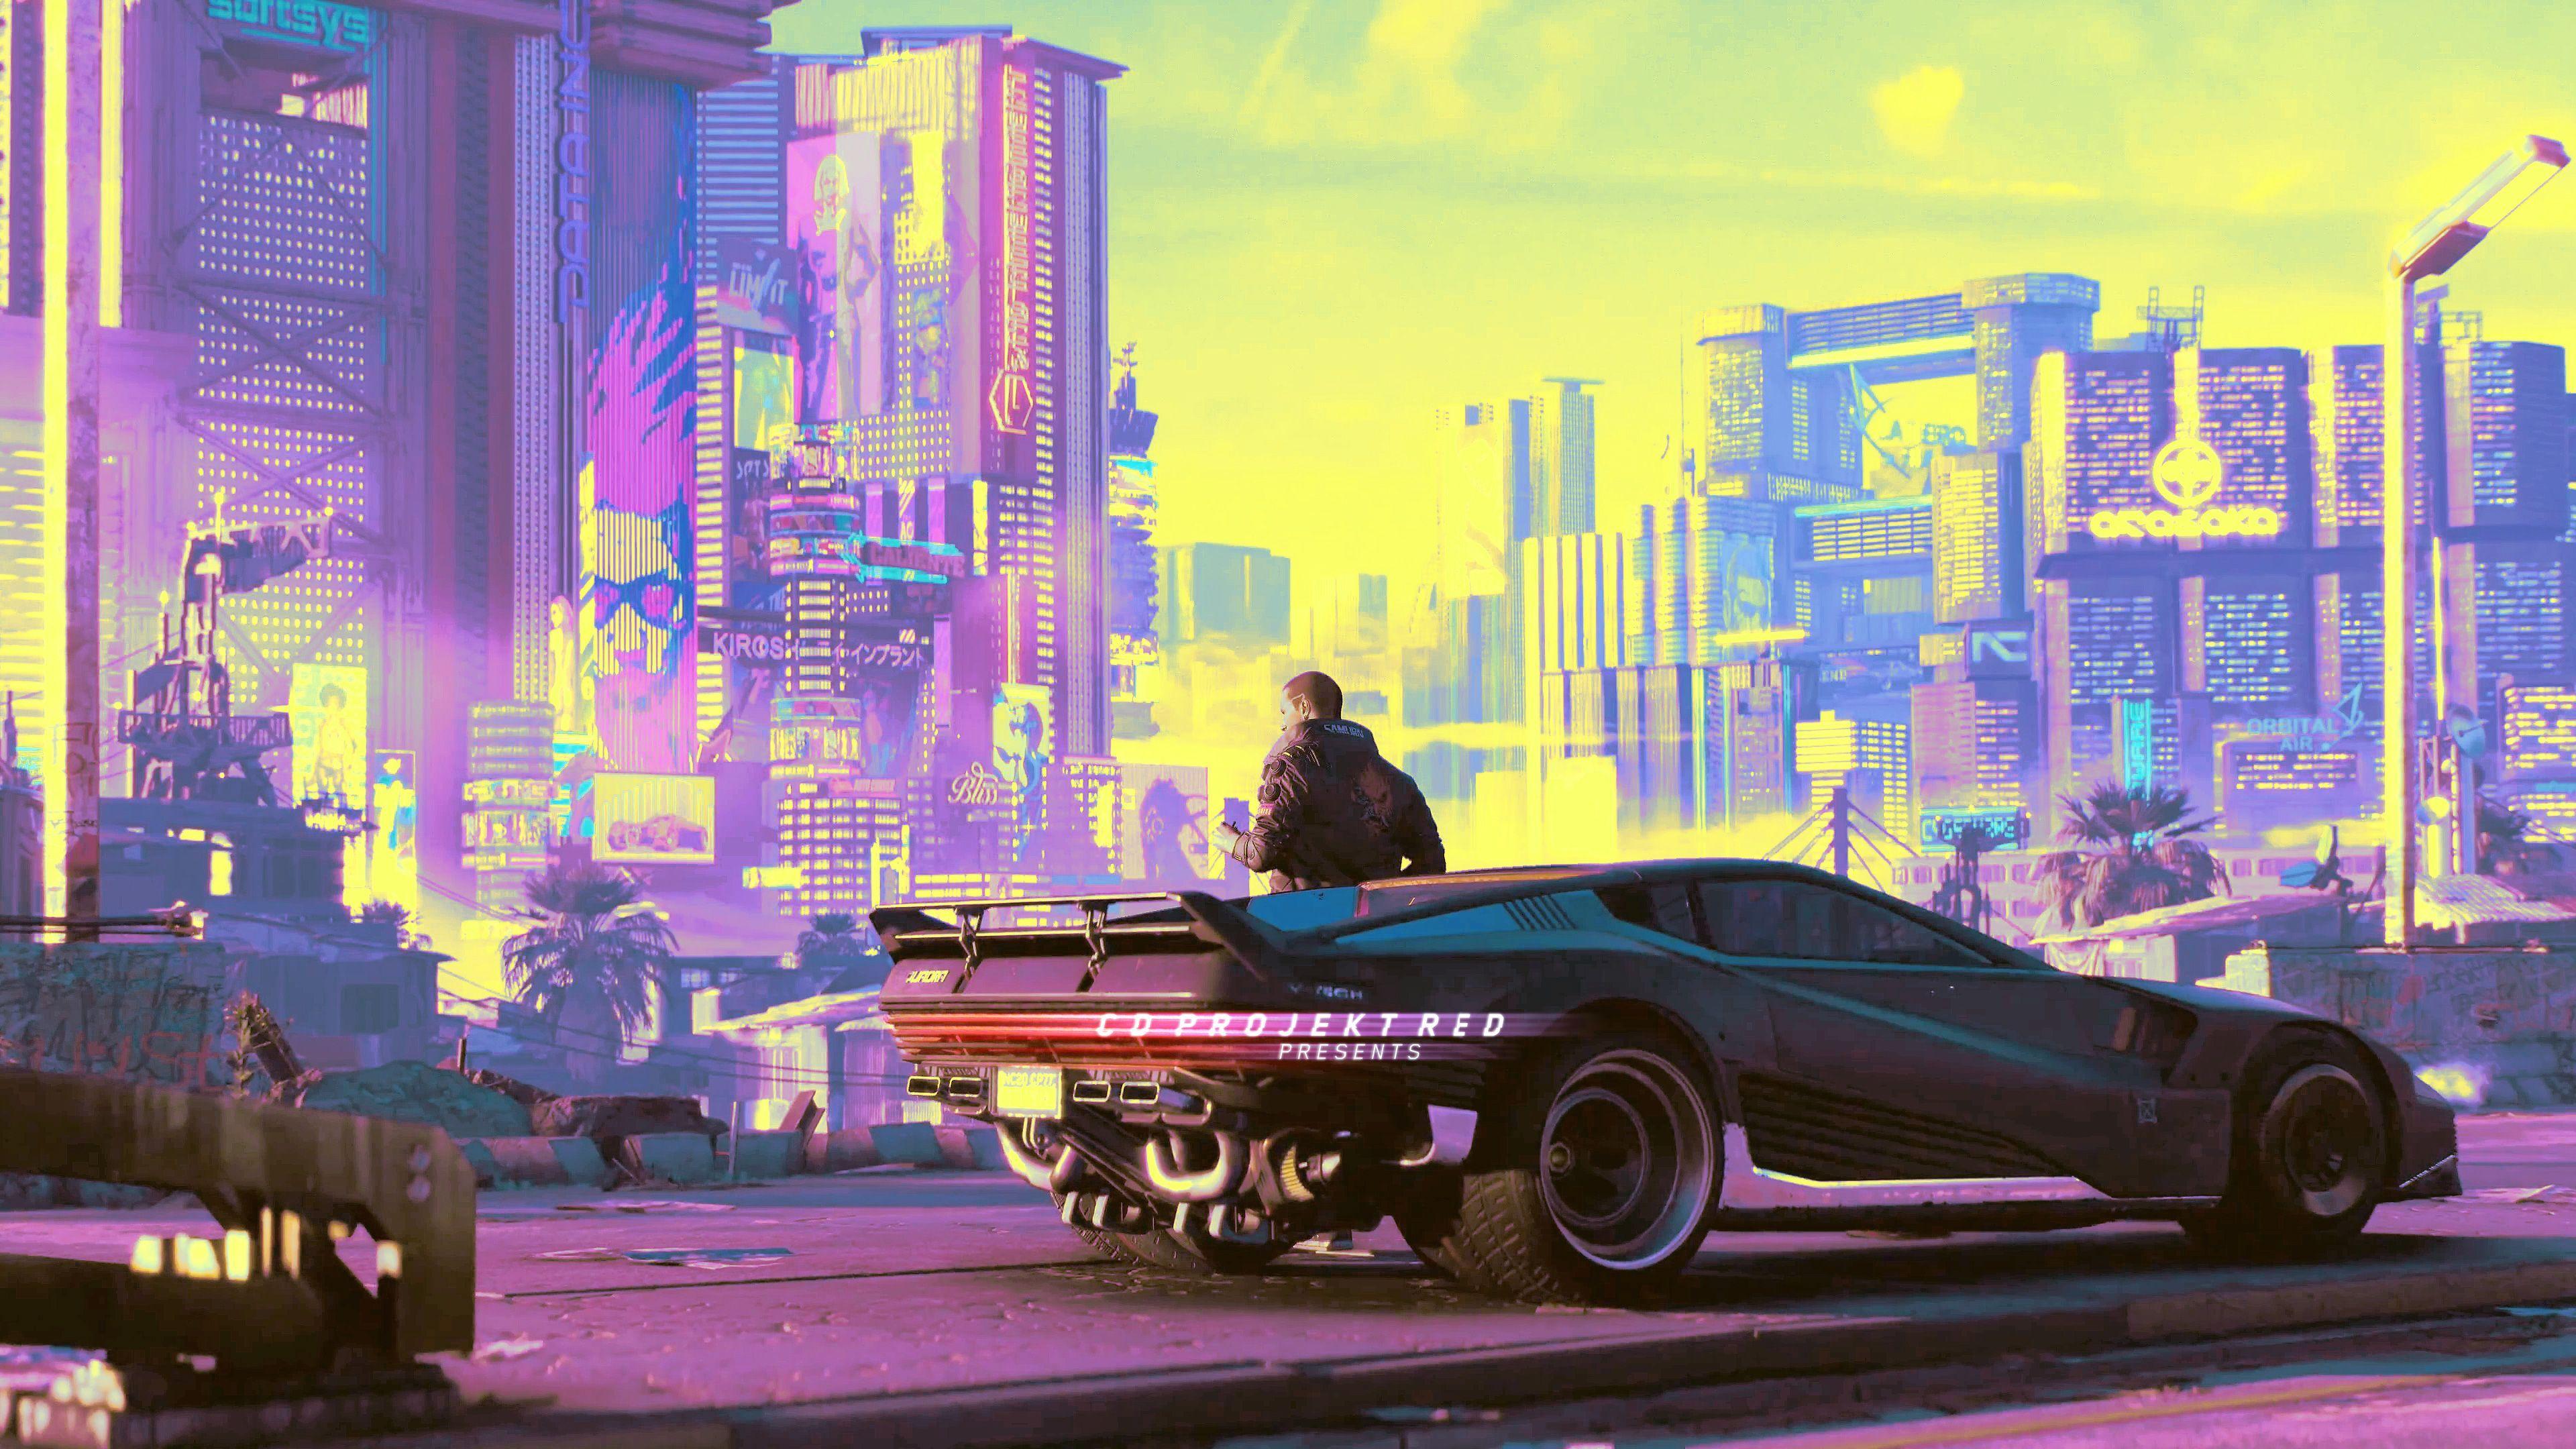 Cyberpunk 2077 City Concept Art 8K Wallpaper #3.2260